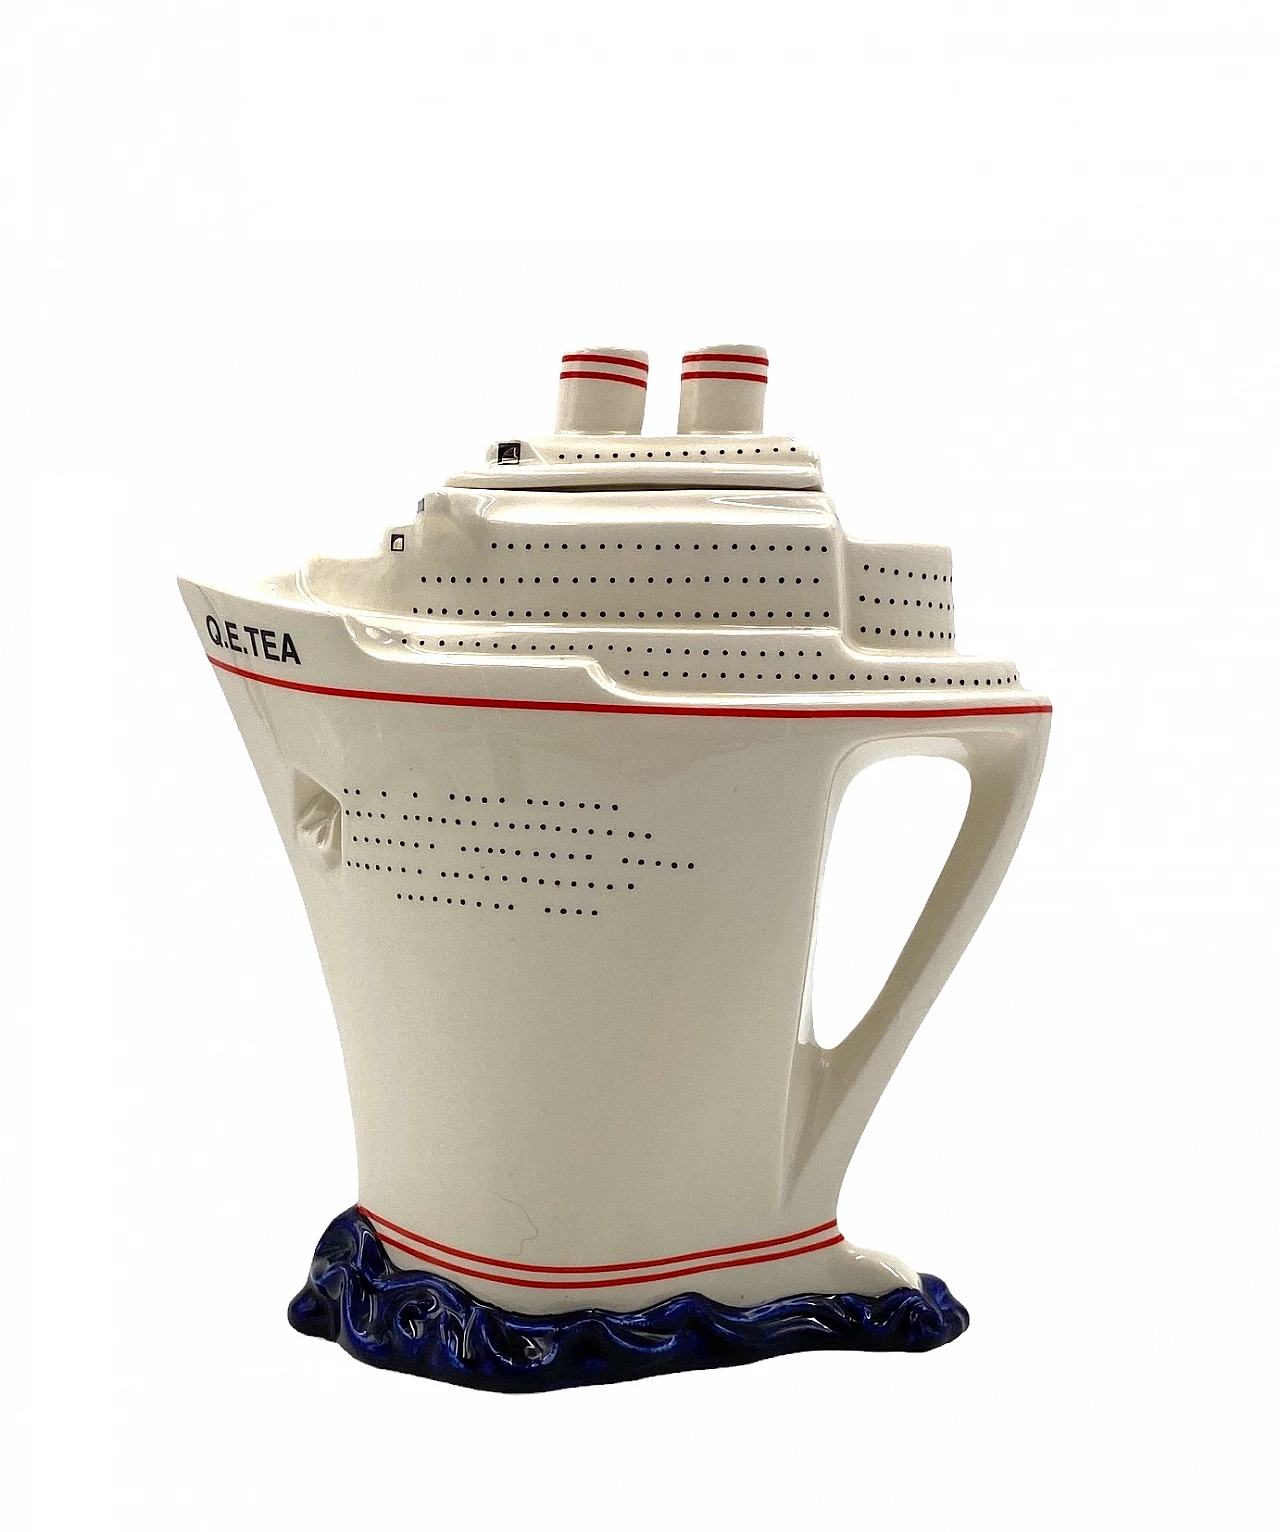 Queen Elizabeth II cruise ship teapot by Paul Cardew 10